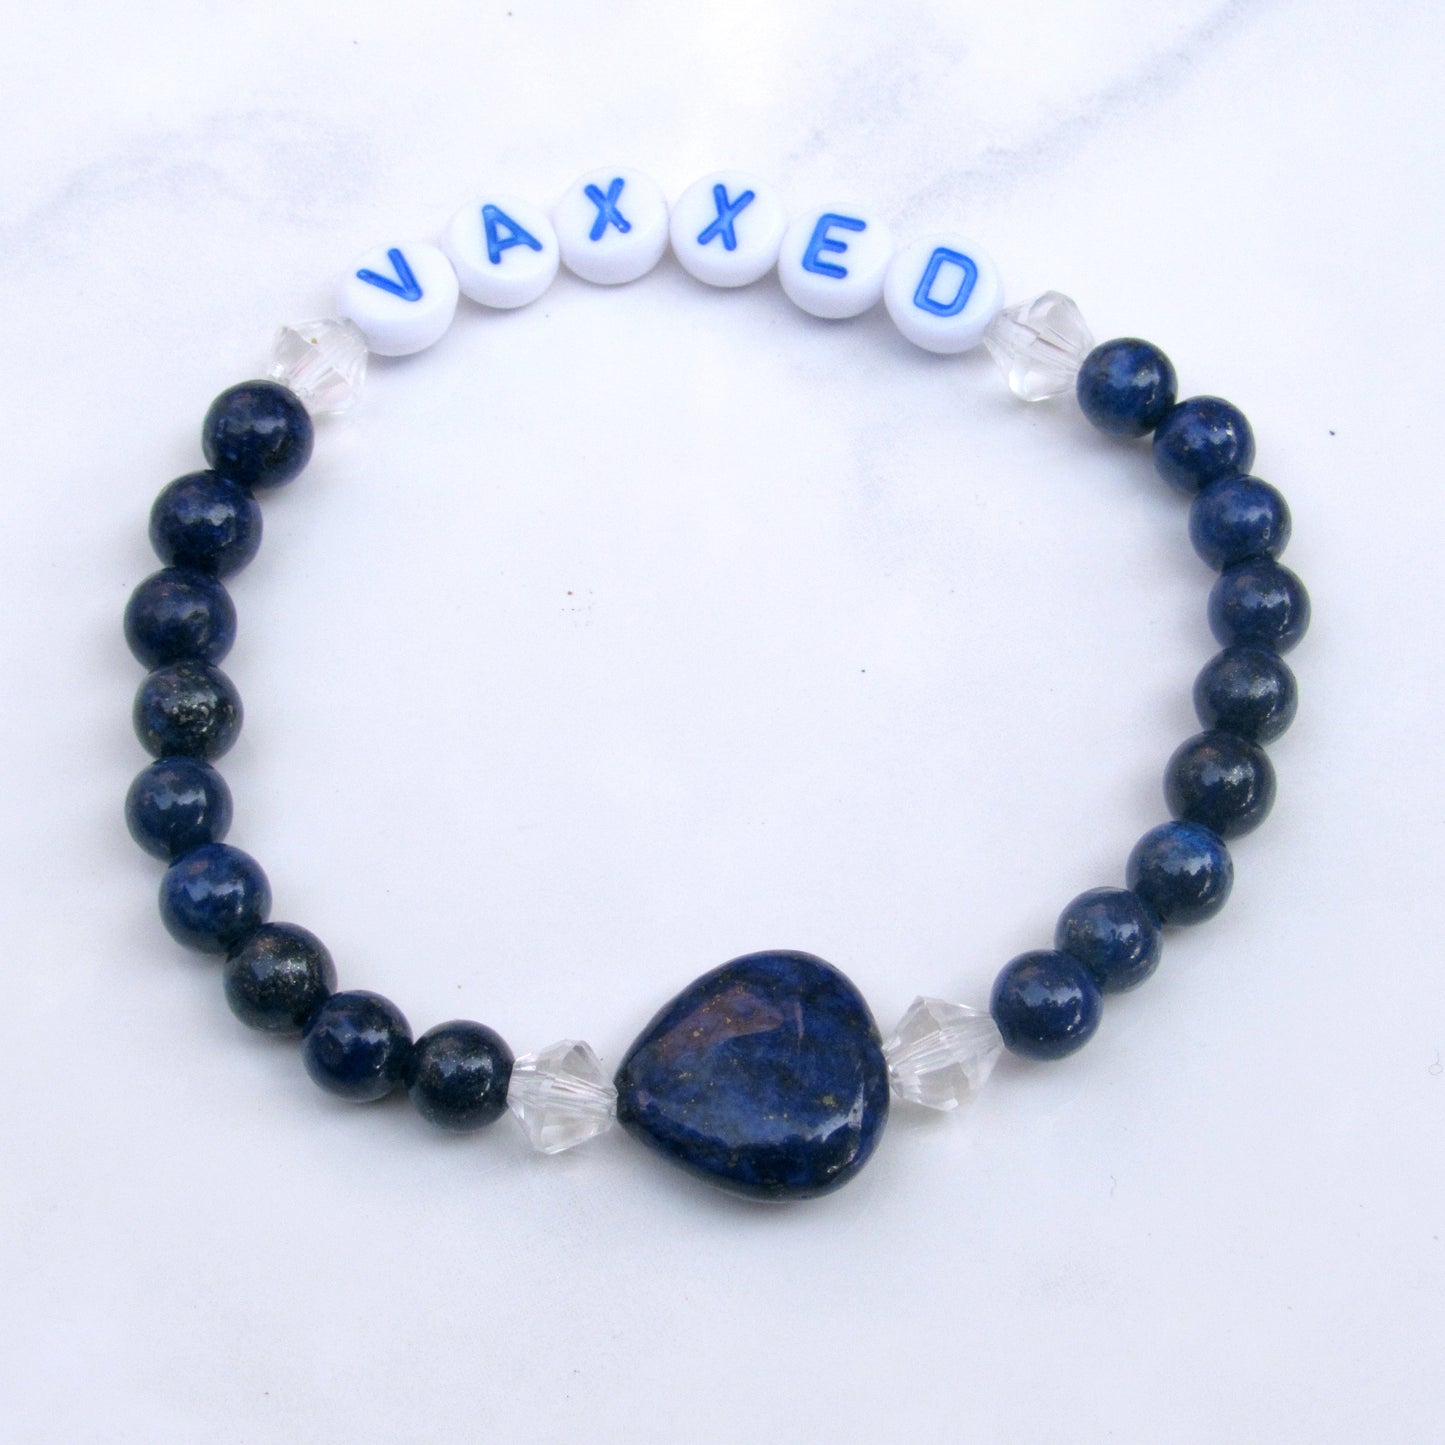 Gemstone VAXXED phrase stretch bracelets